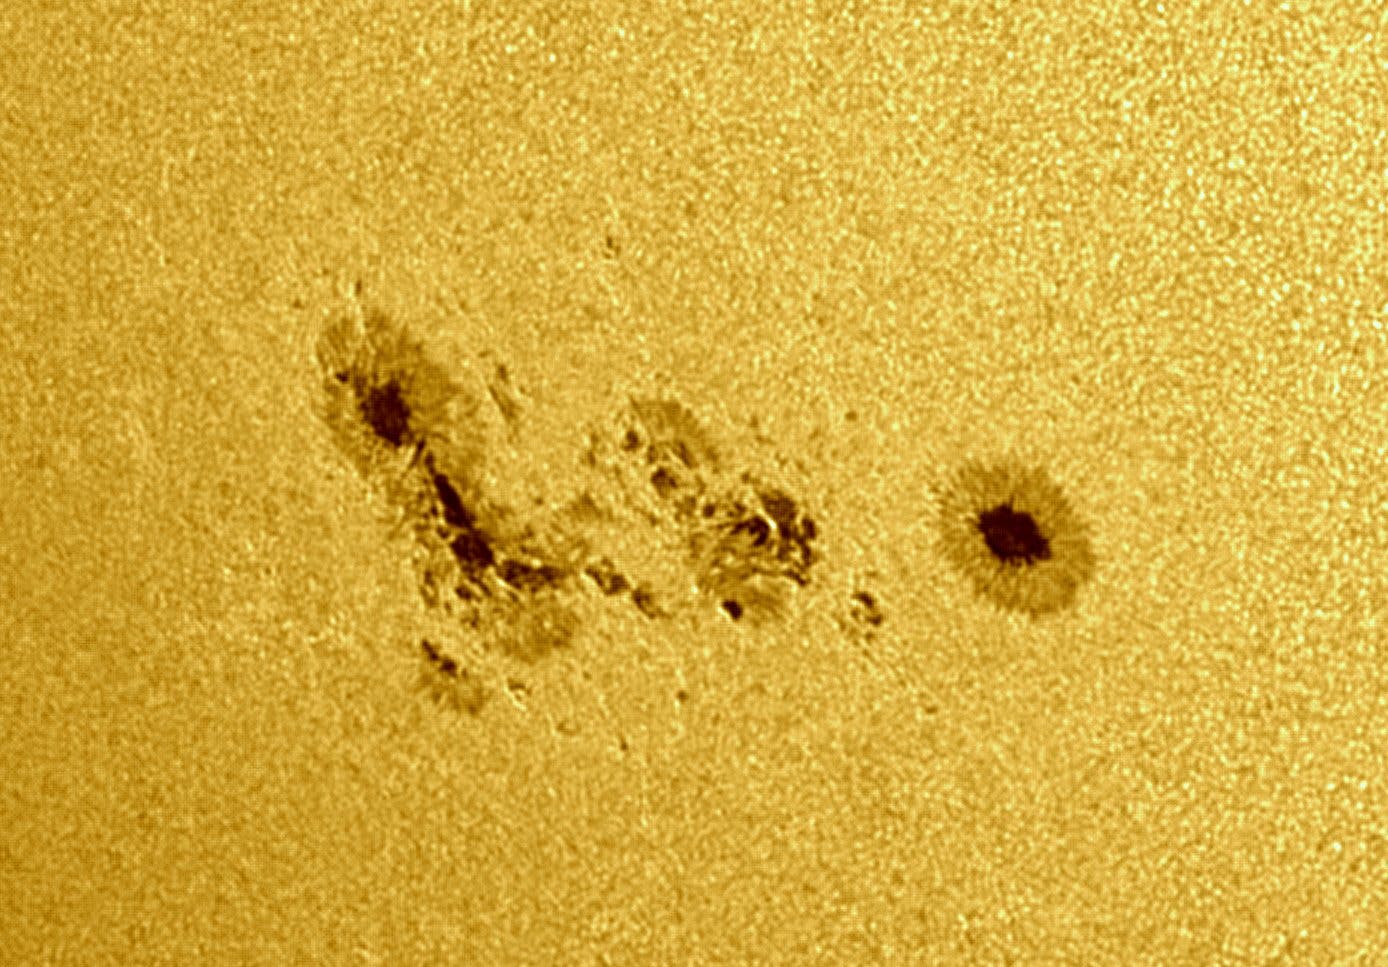 Sonnenfleck AR 2781